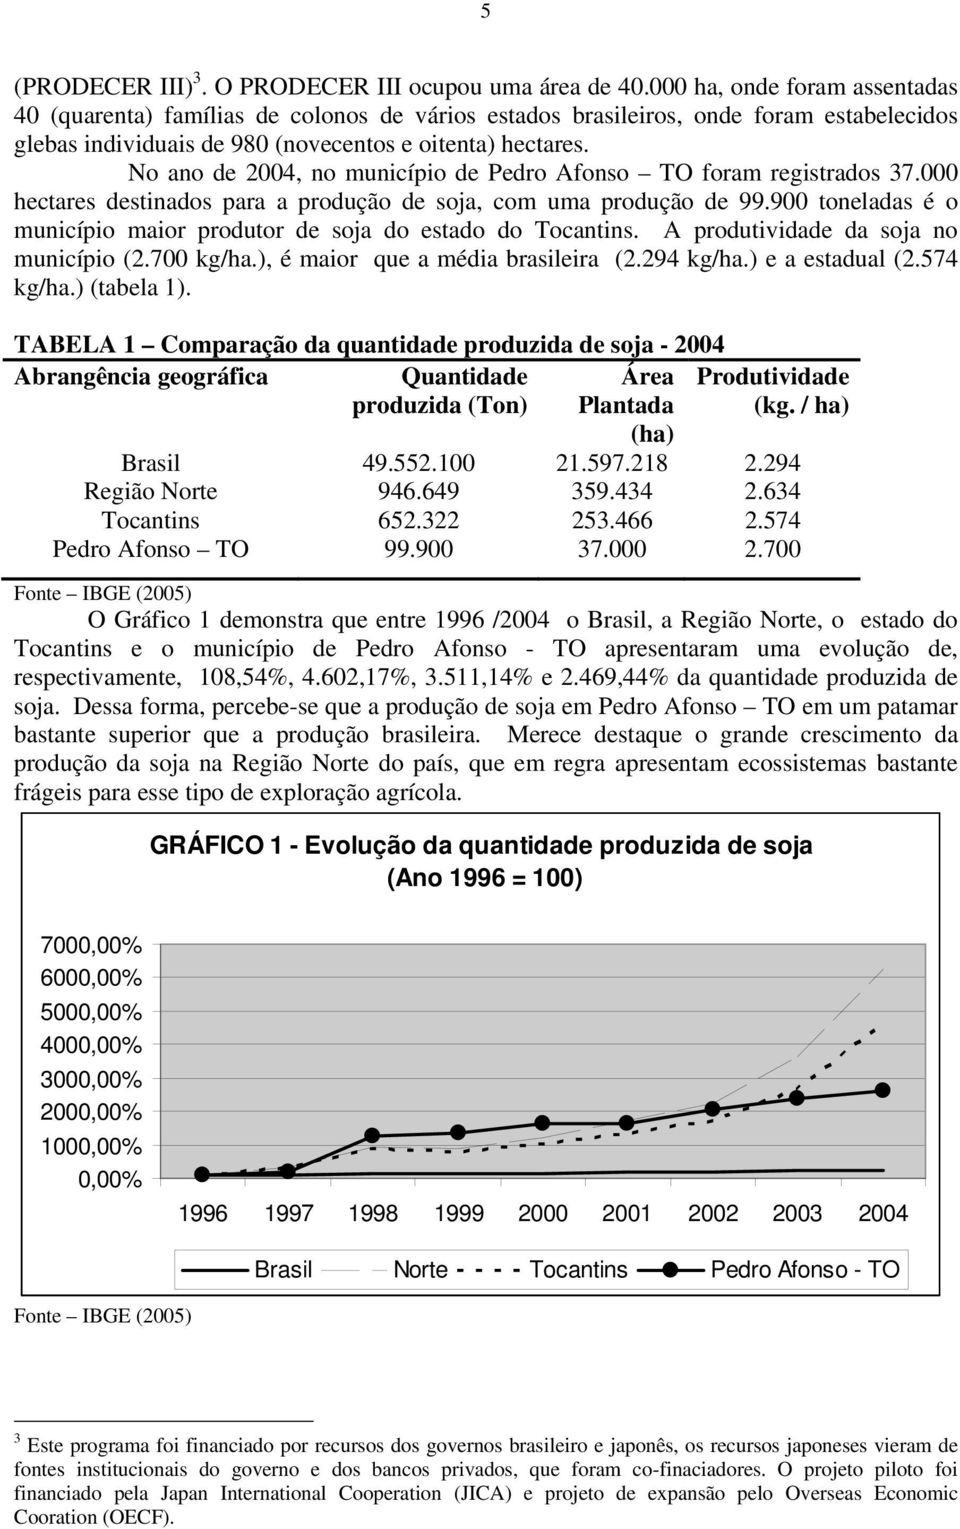 No ano de 2004, no município de Pedro Afonso TO foram registrados 37.000 hectares destinados para a produção de soja, com uma produção de 99.